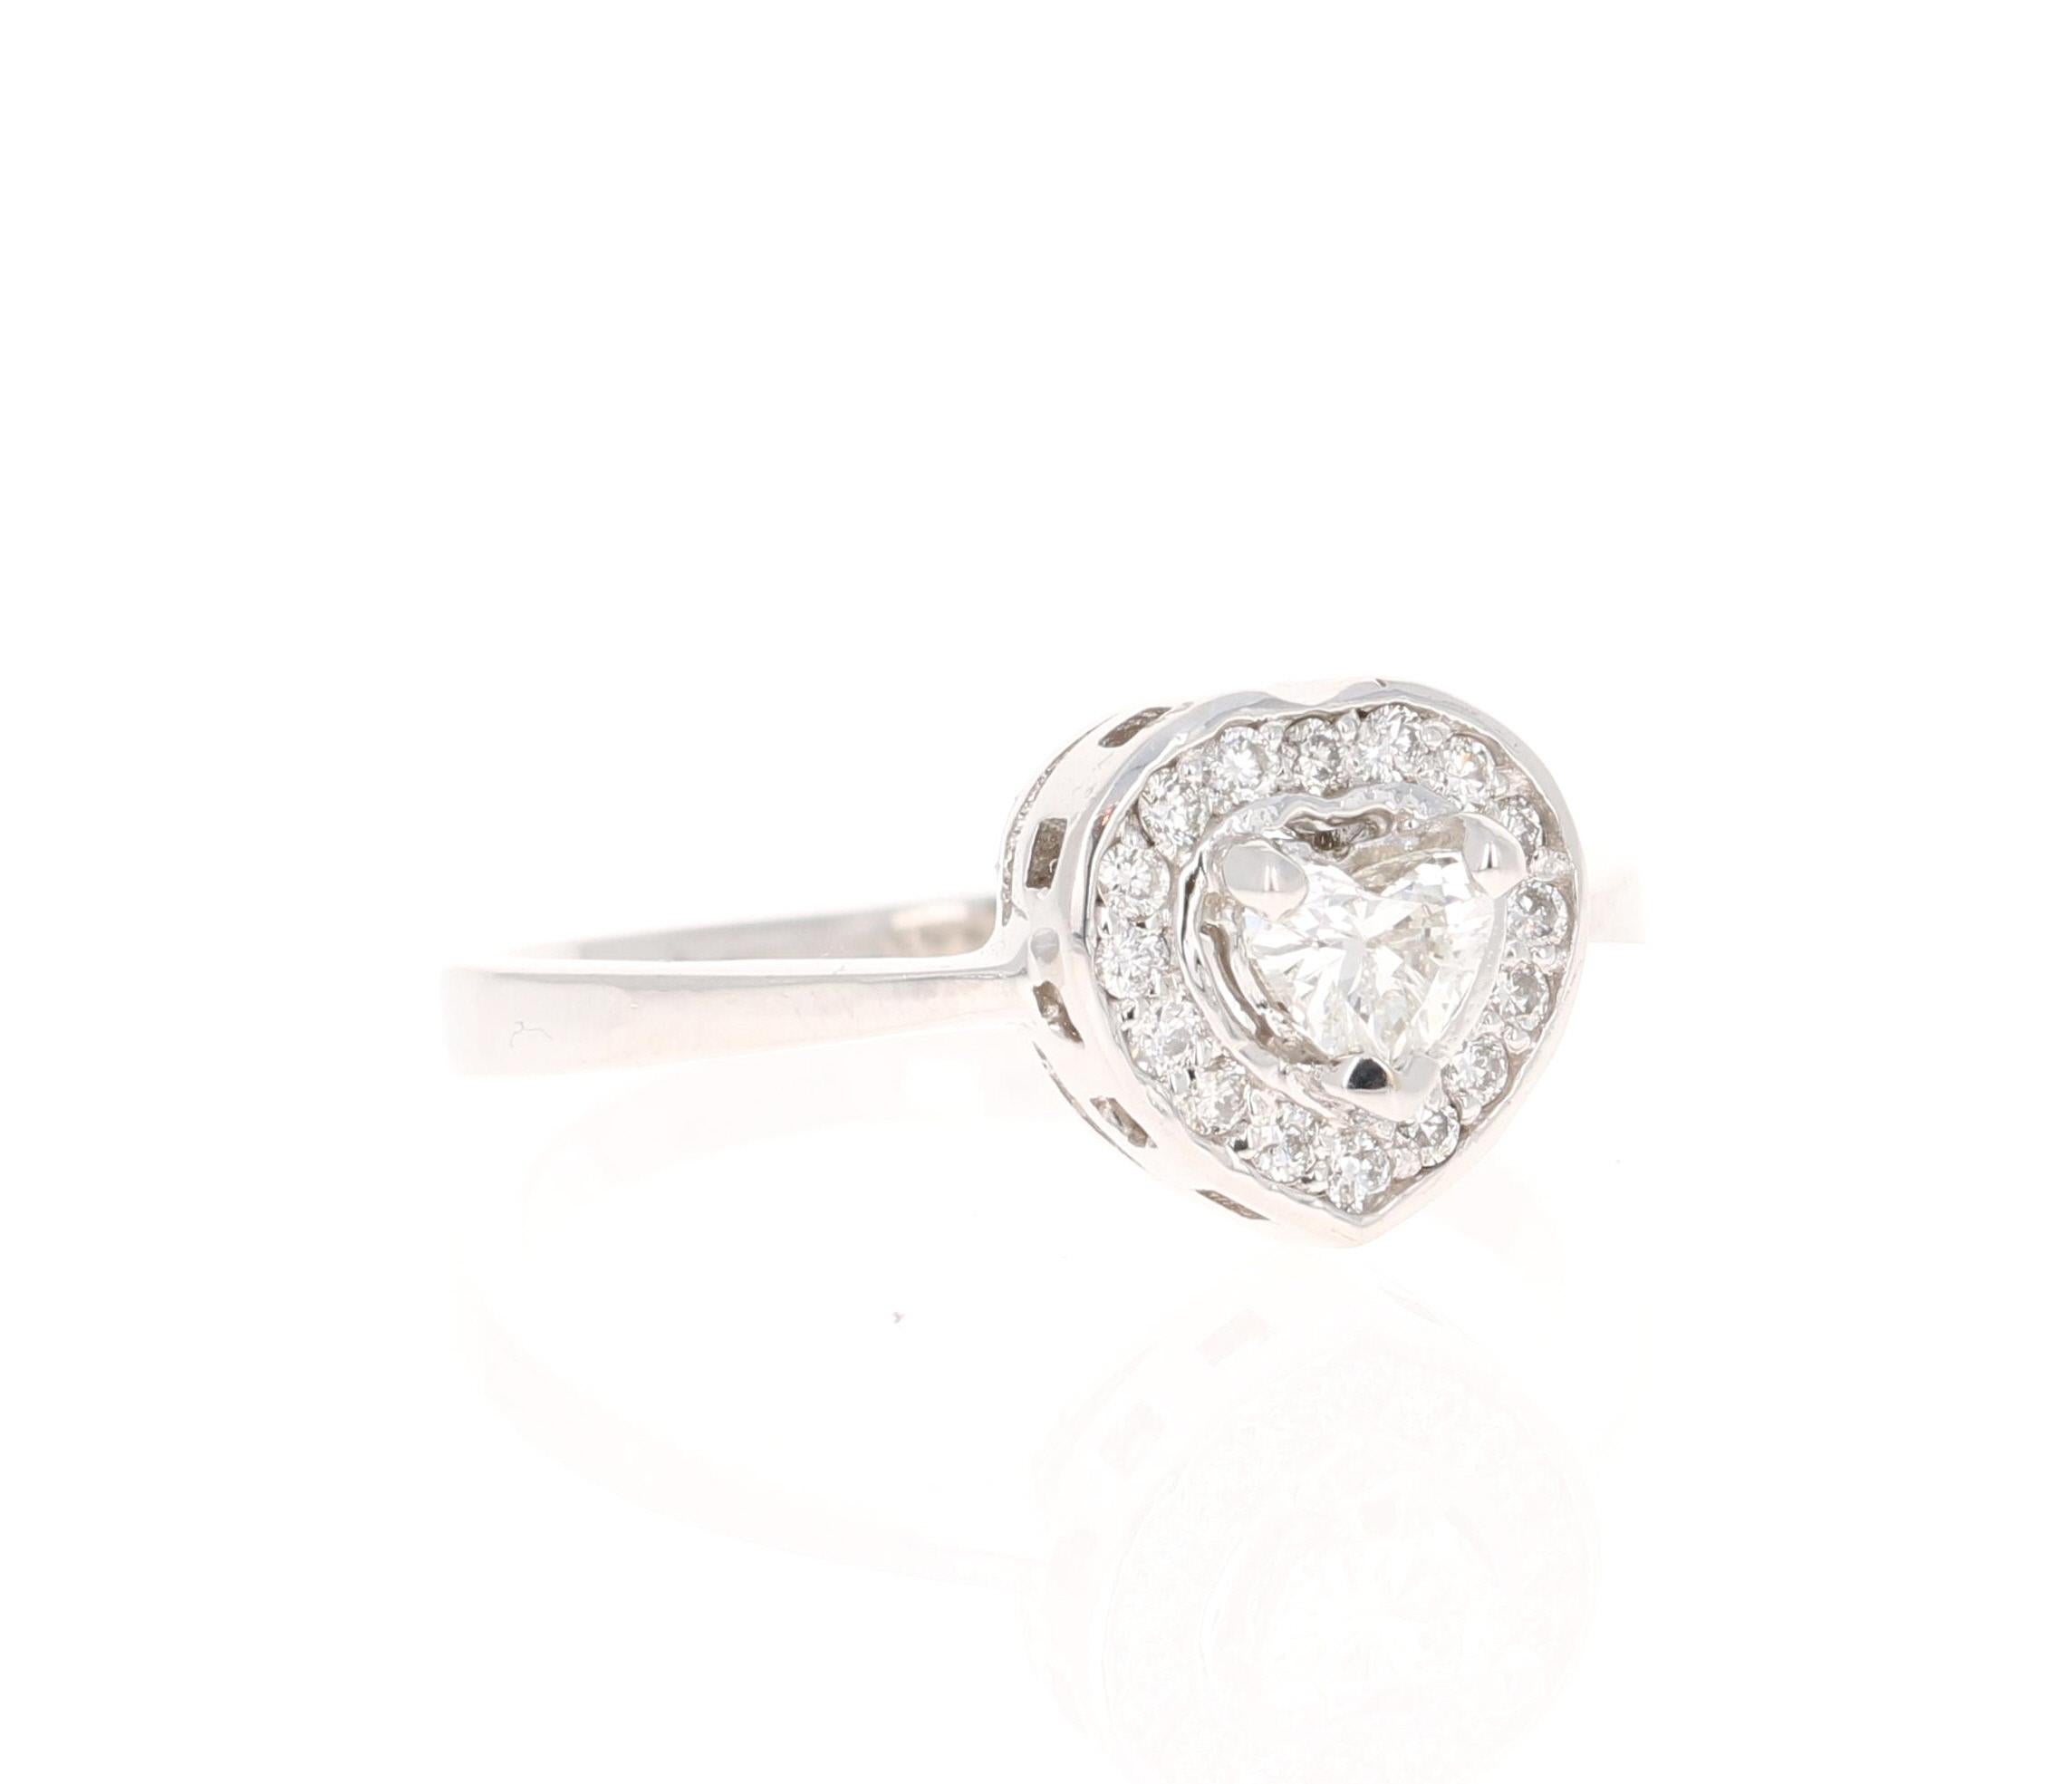 Une bague de fiançailles magnifique et unique avec un diamant taillé en cœur. 

Cette bague unique comporte un diamant taillé en cœur pesant 0,27 carats et est entourée de 16 diamants taillés en rond pesant 0,16 carats.  (Clarté : SI1, Couleur : F) 